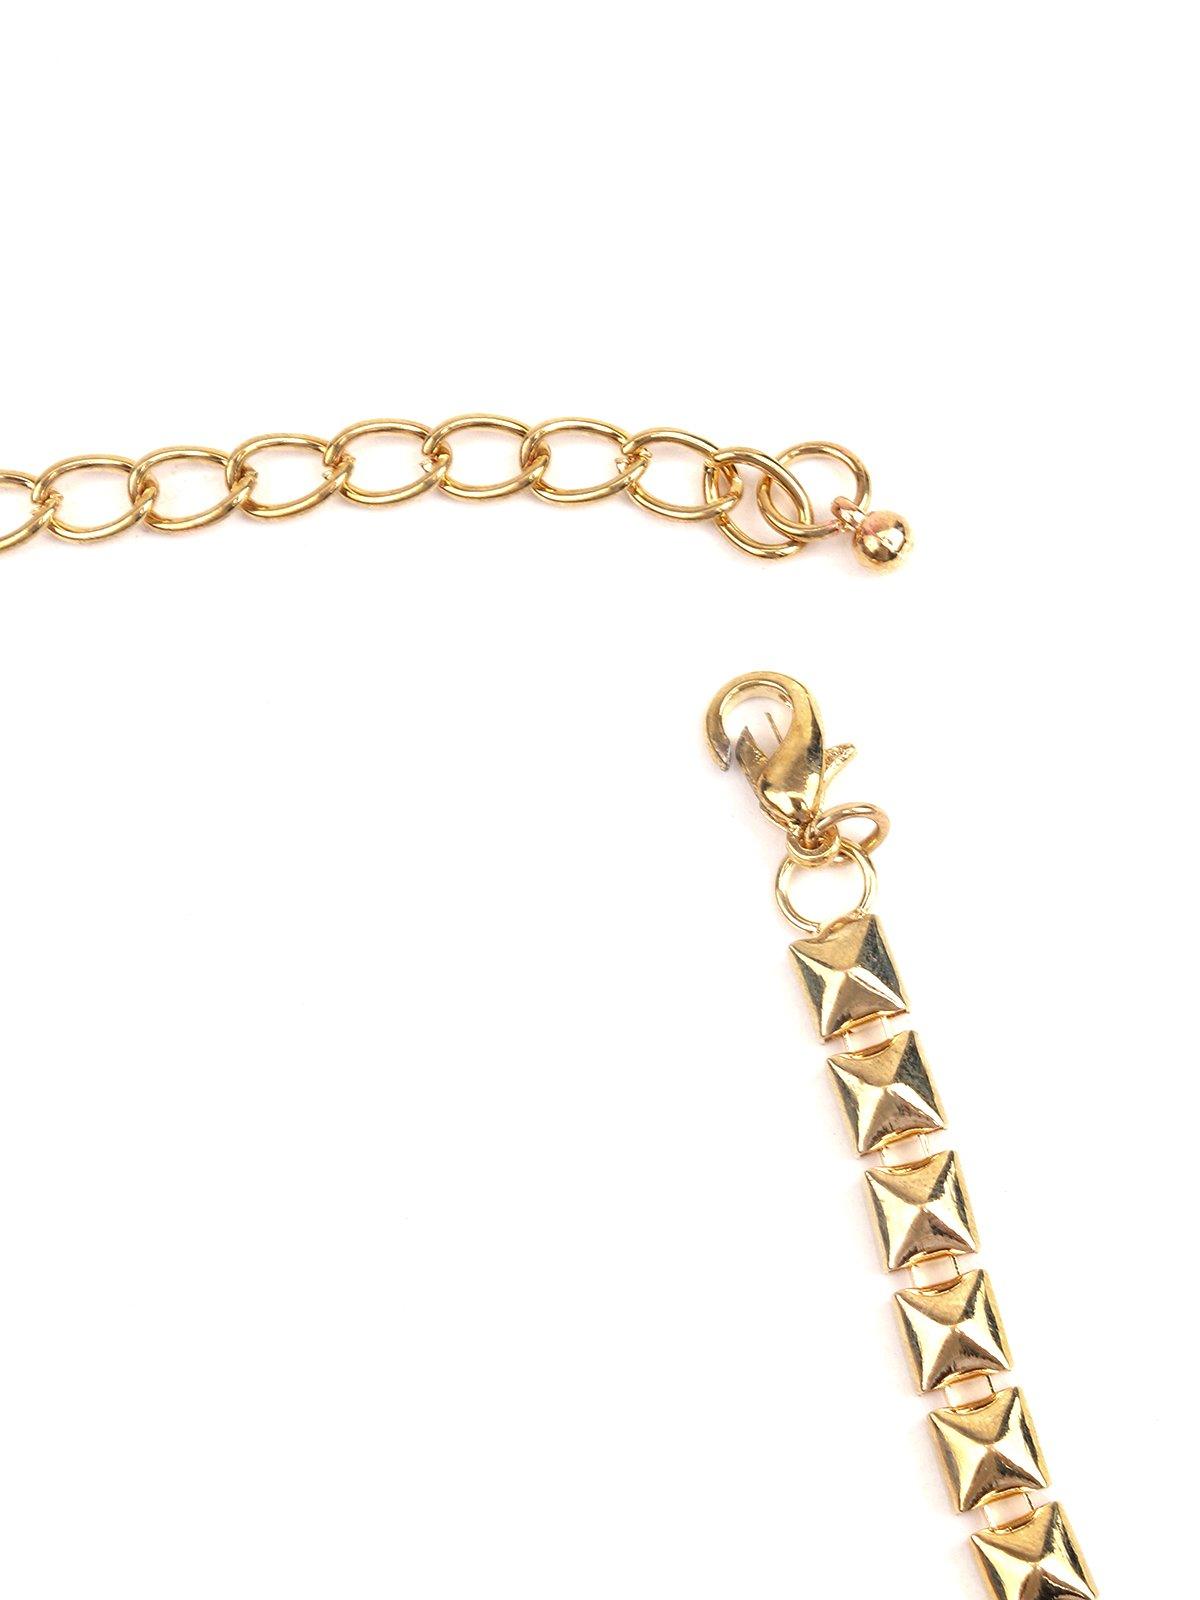 Women's Gold Tone Queenly Bracelet - Odette